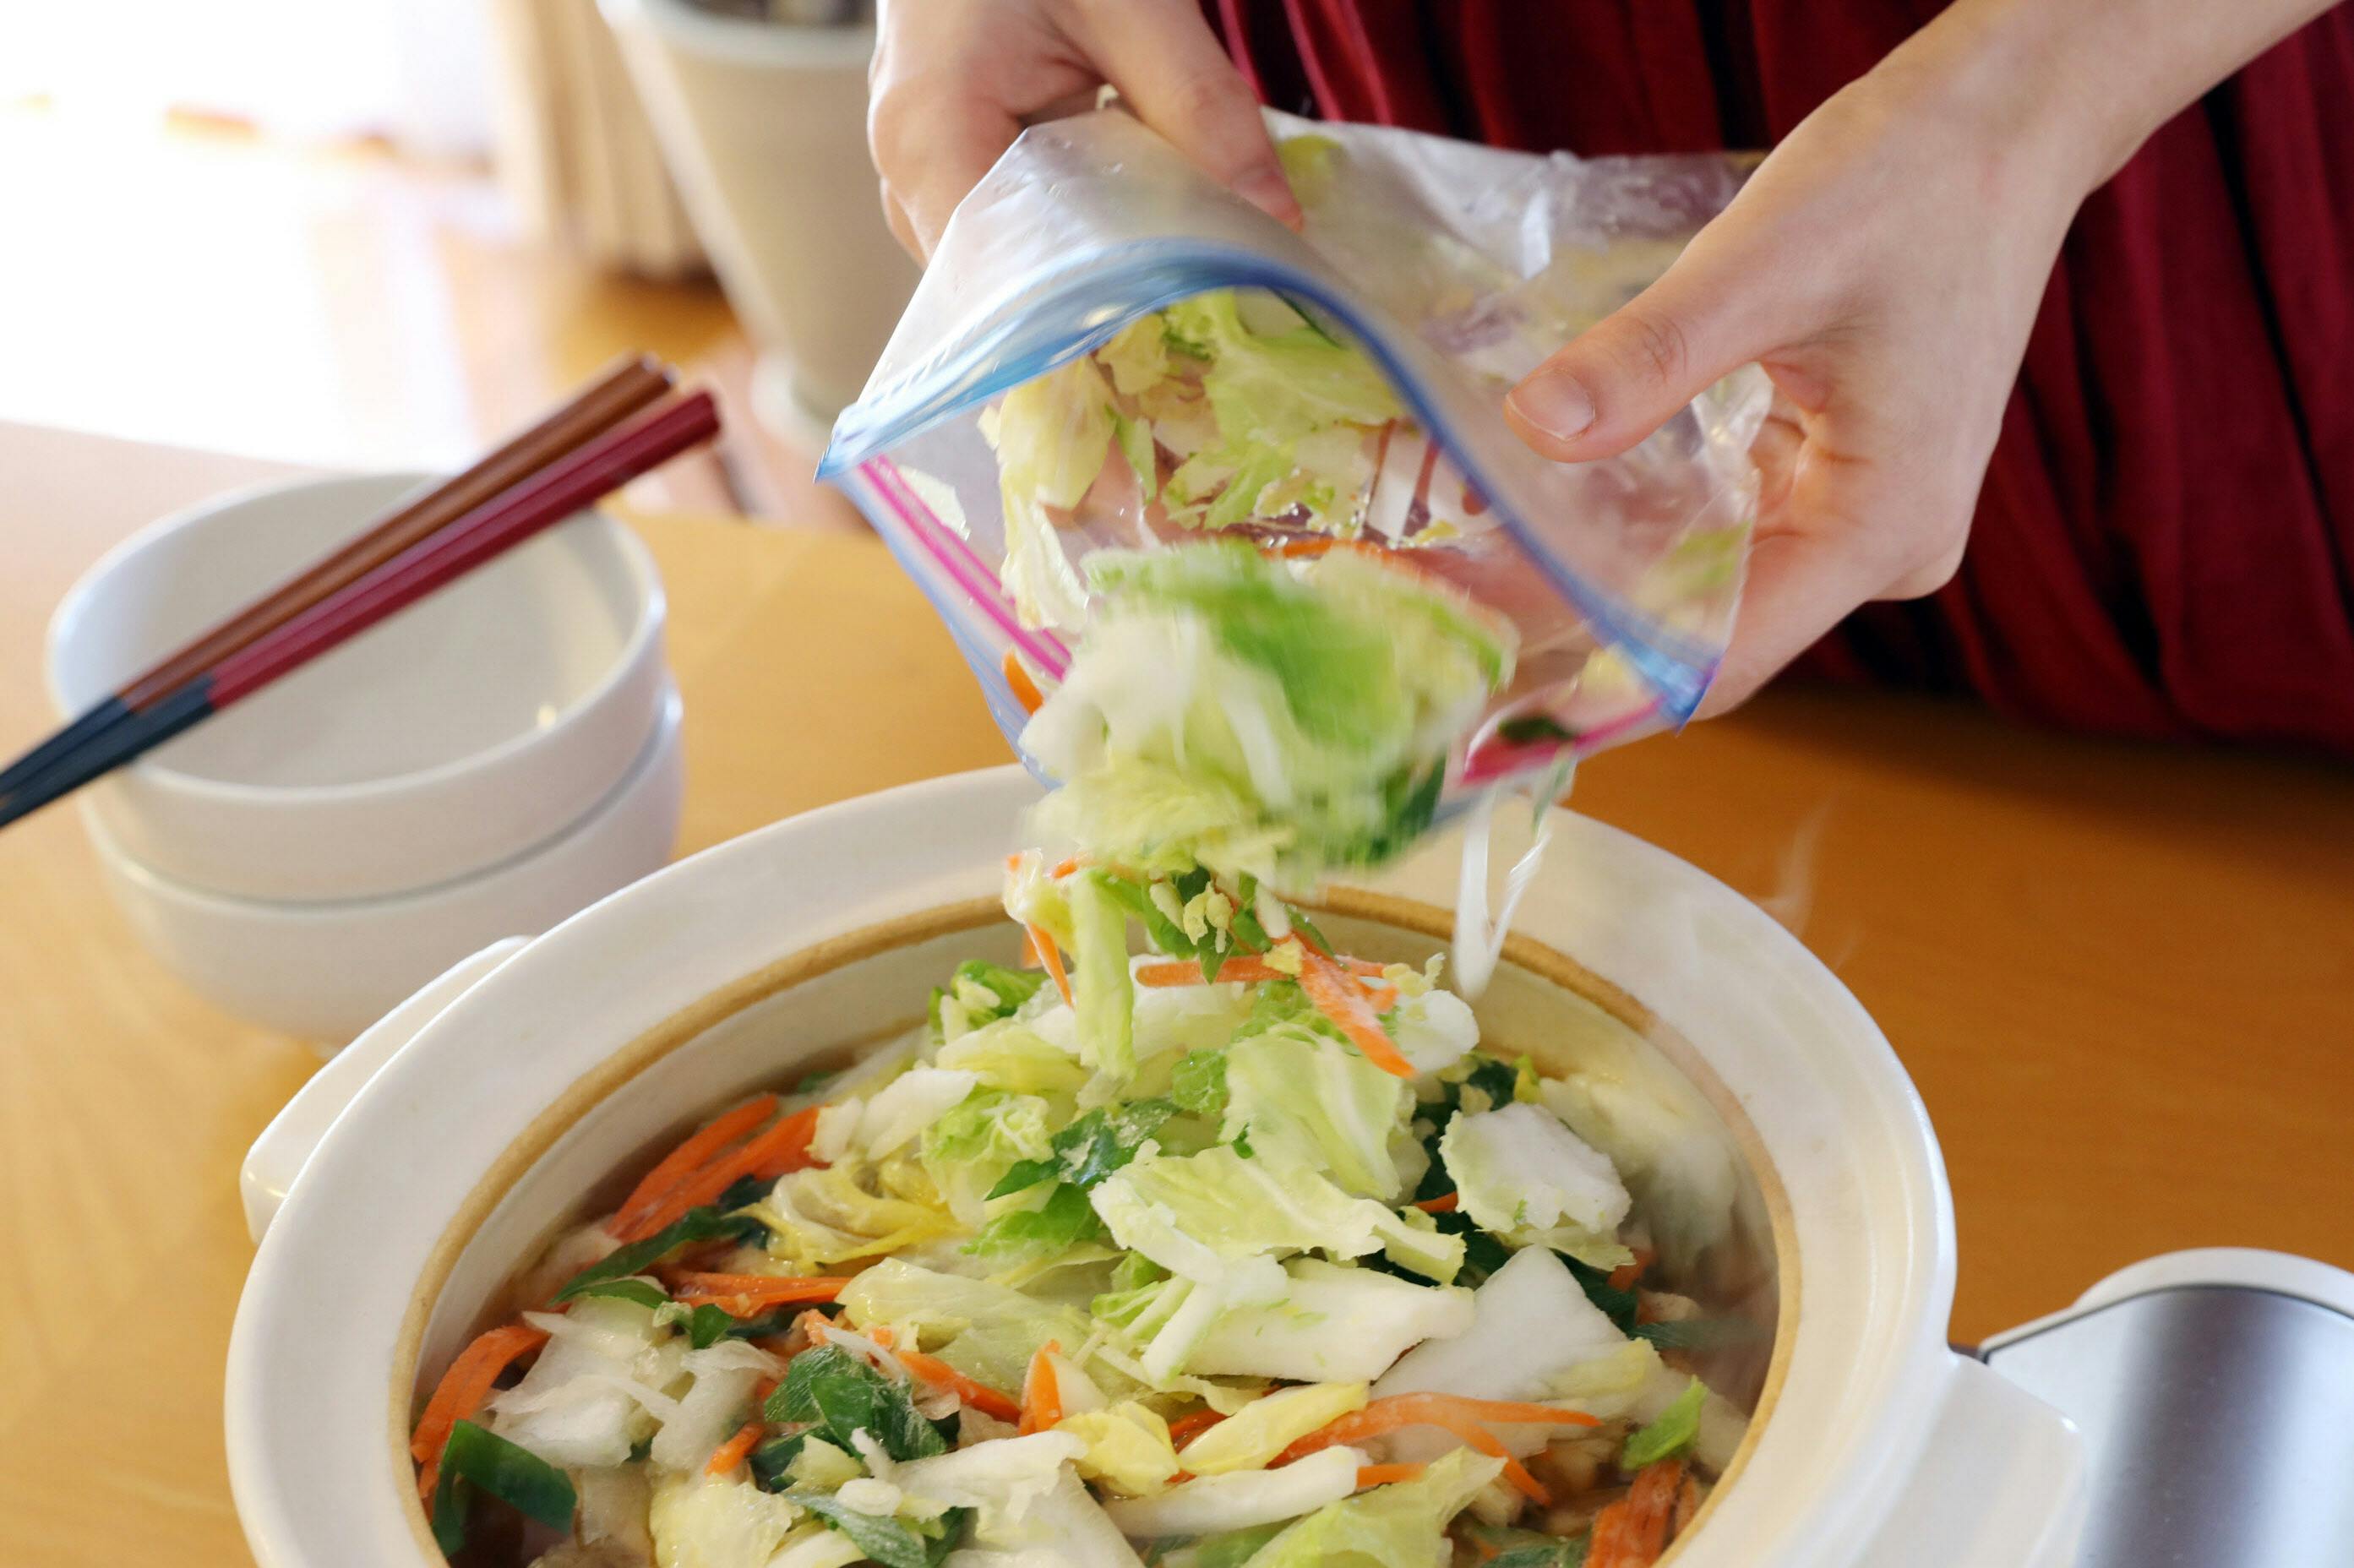 鍋なら加熱5分 食材のムダ防ぐ 調理5分の鍋用が重宝 冷凍野菜ミックス作ってみた Nikkei Style